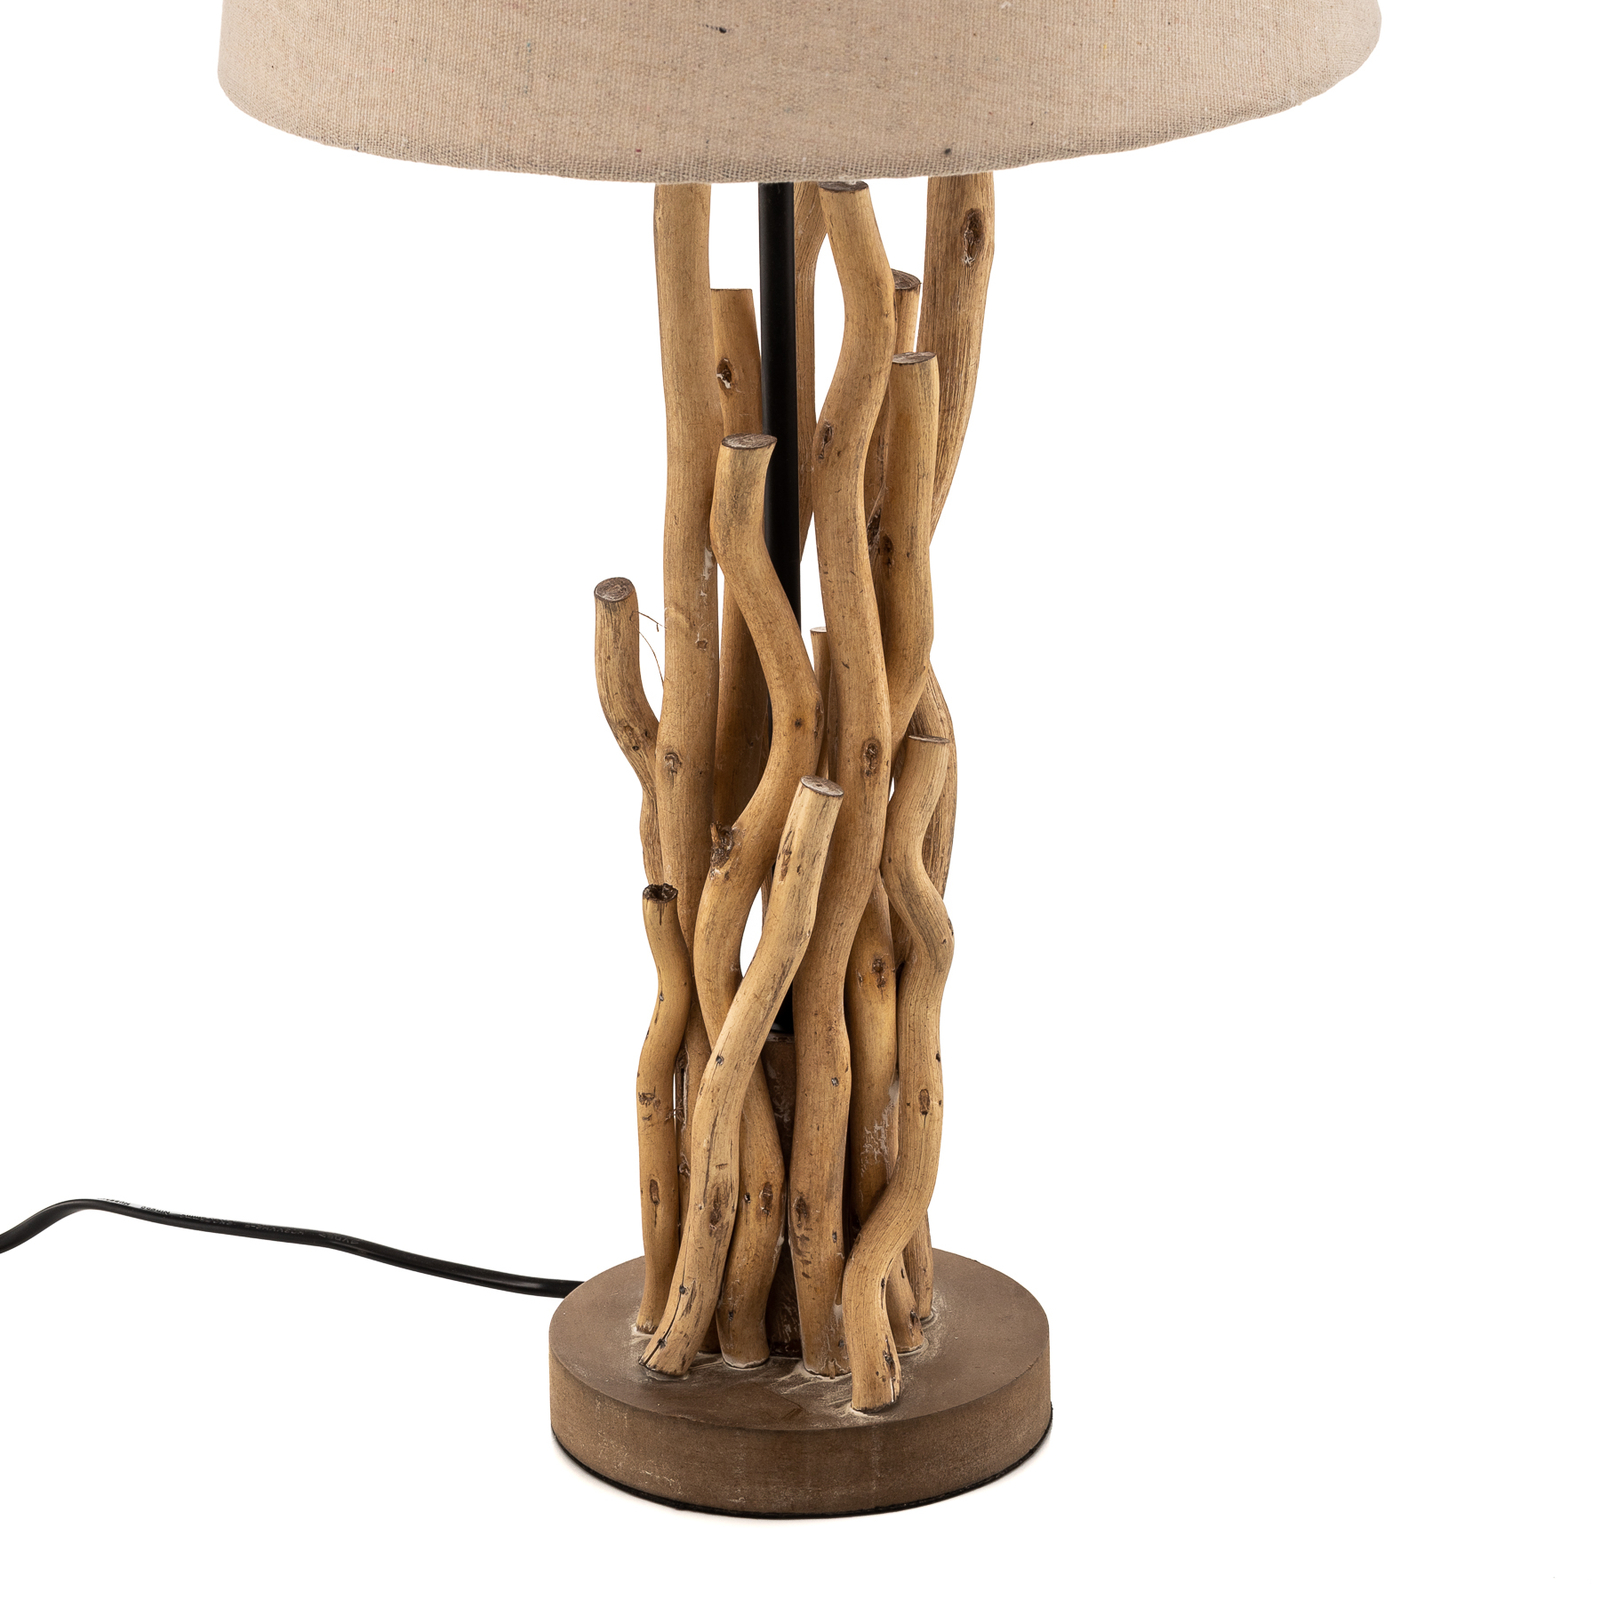 Lampa stołowa Marica klosz z tkaniny i drewno